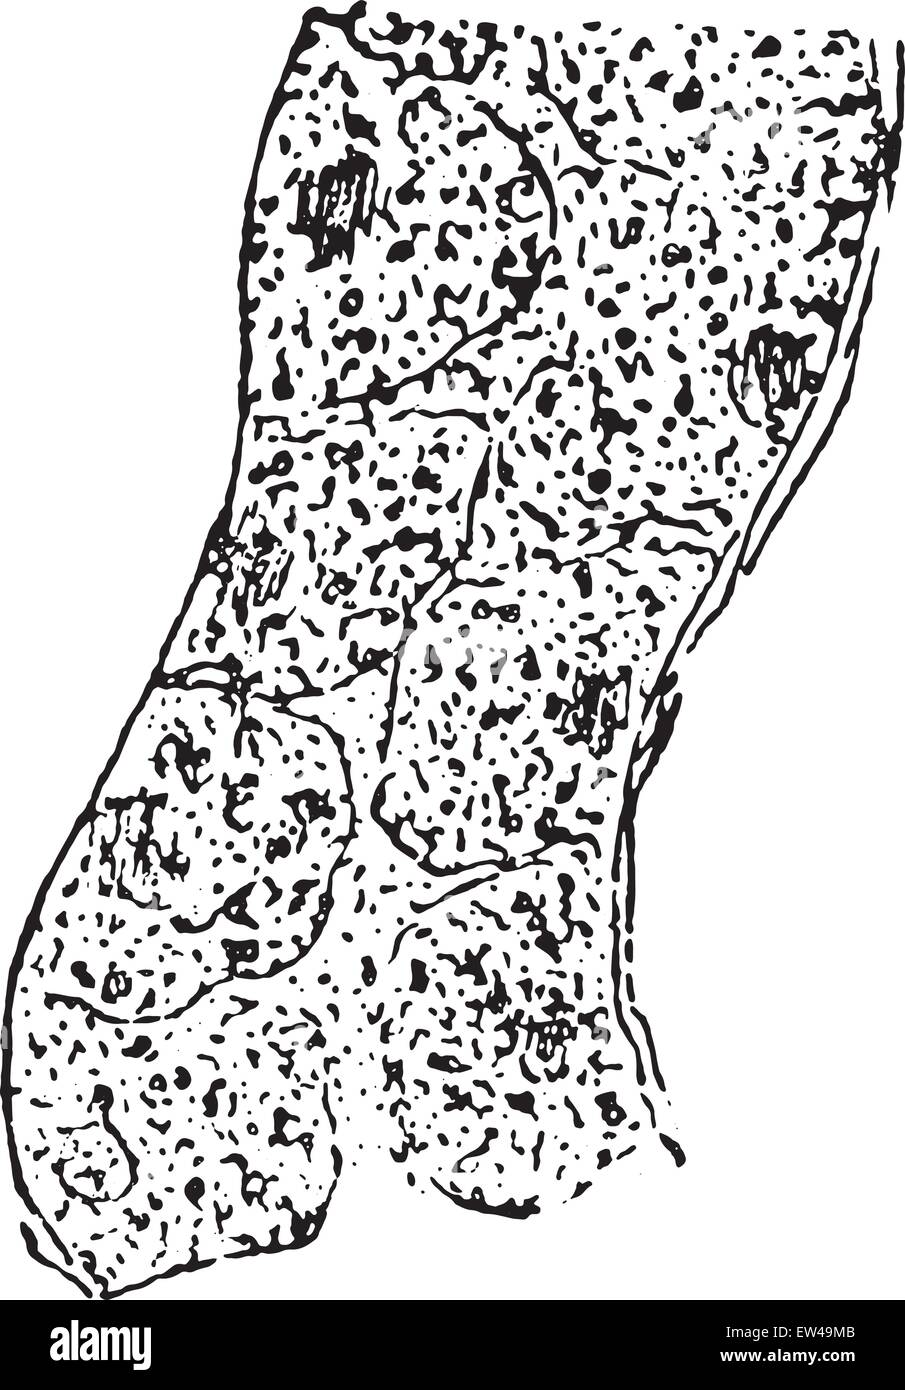 Dégénérescence granulaire de l'épithélium rénal, vintage engraved illustration. Illustration de Vecteur